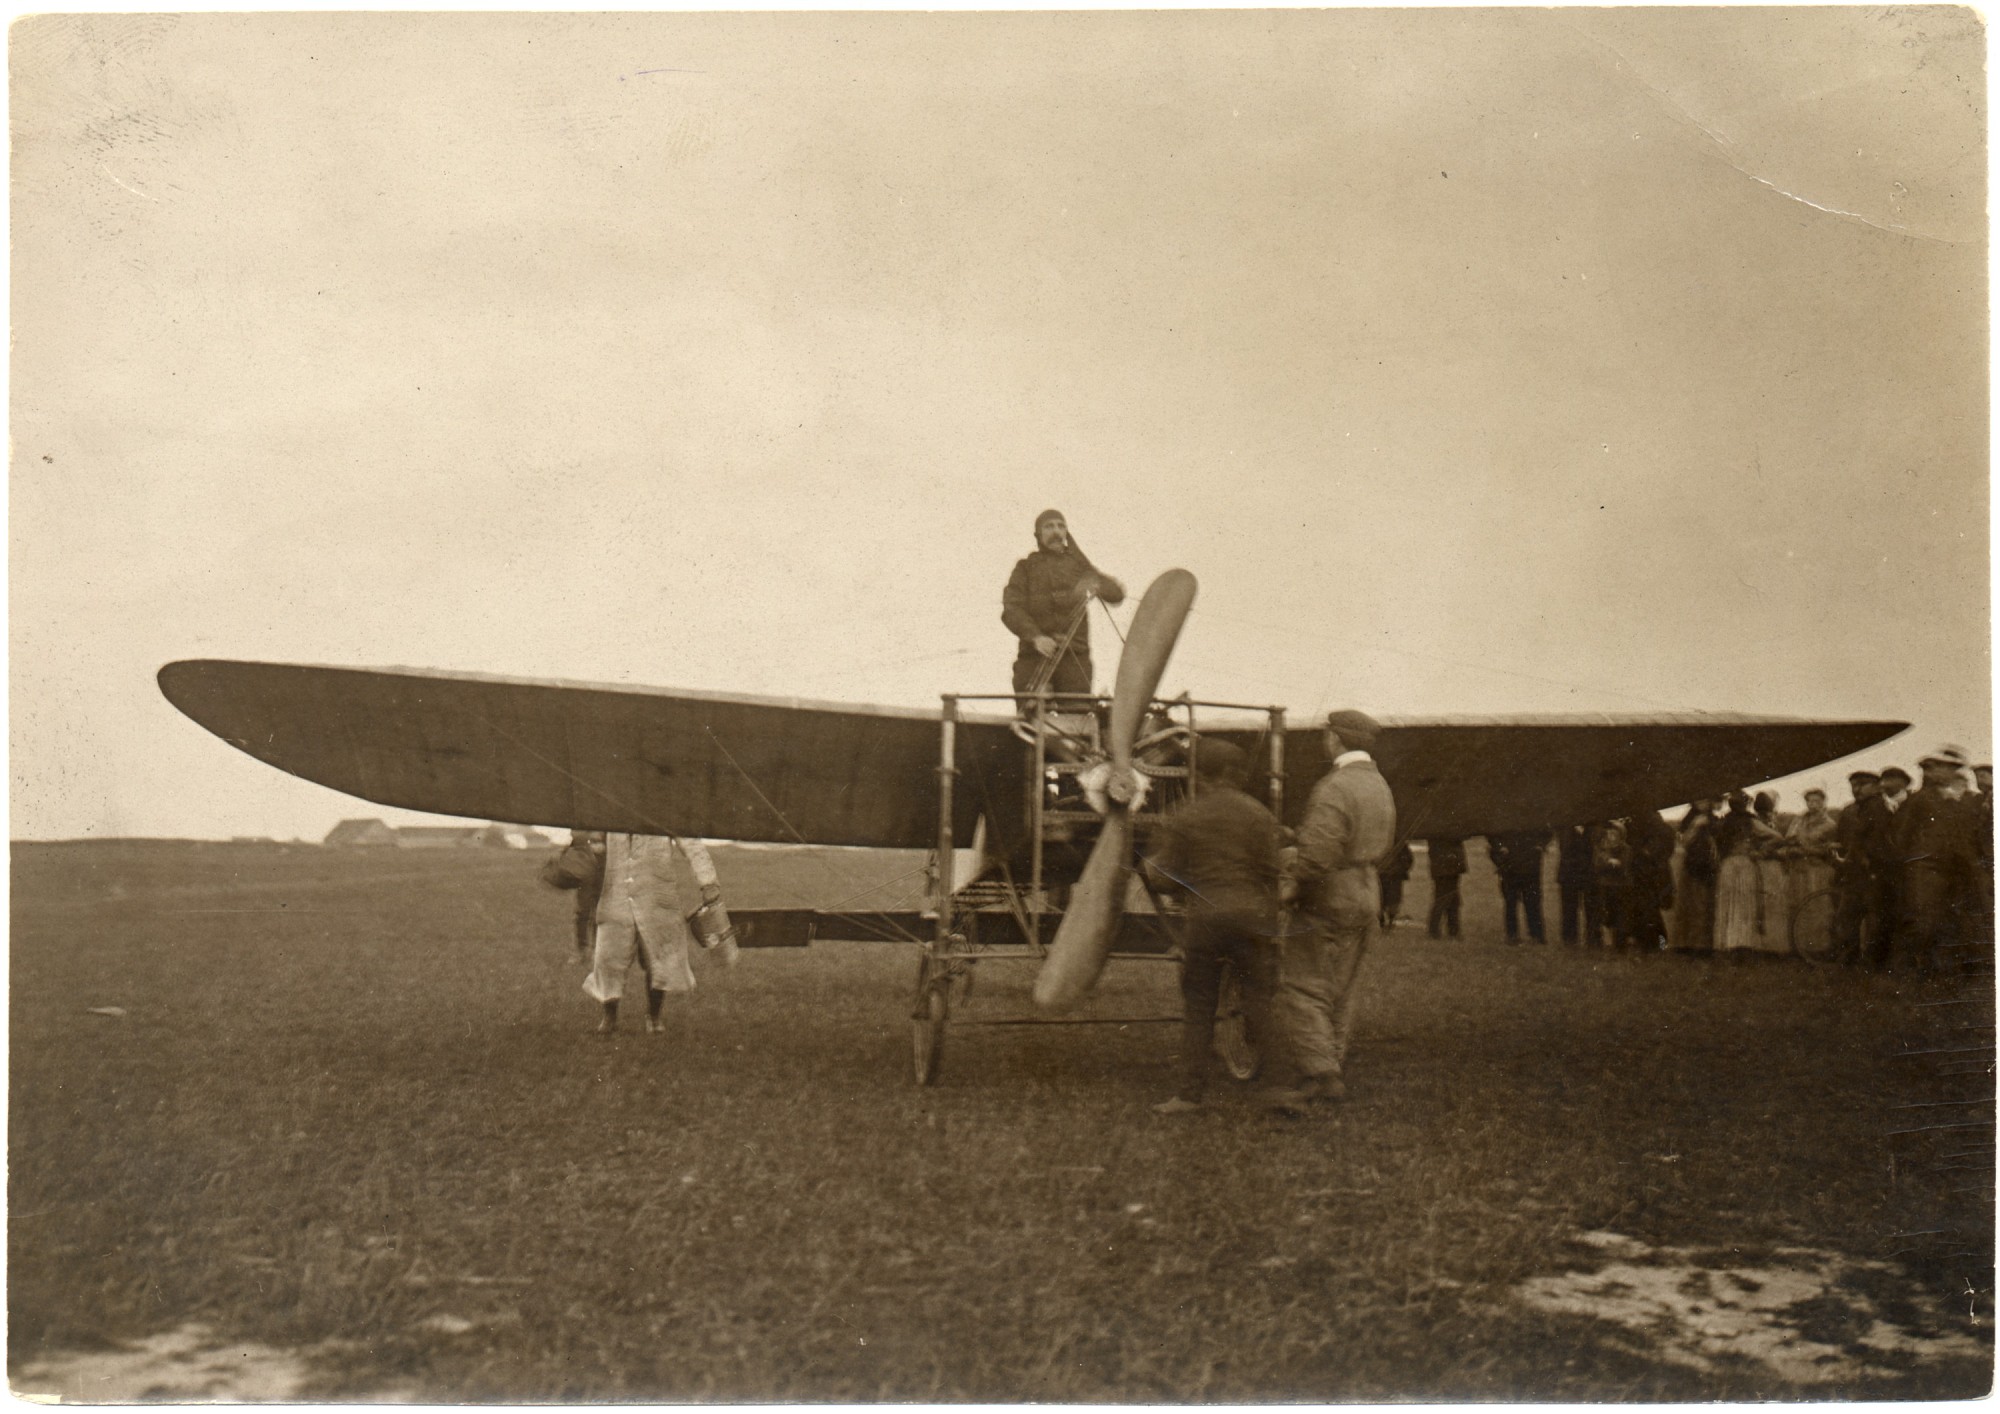 Луи Блерио в начале XX века создал ряд удачных конструкций самолётов.
Судьба конструктора оказалась незавидной: он окончил дни в сумасшедшем доме